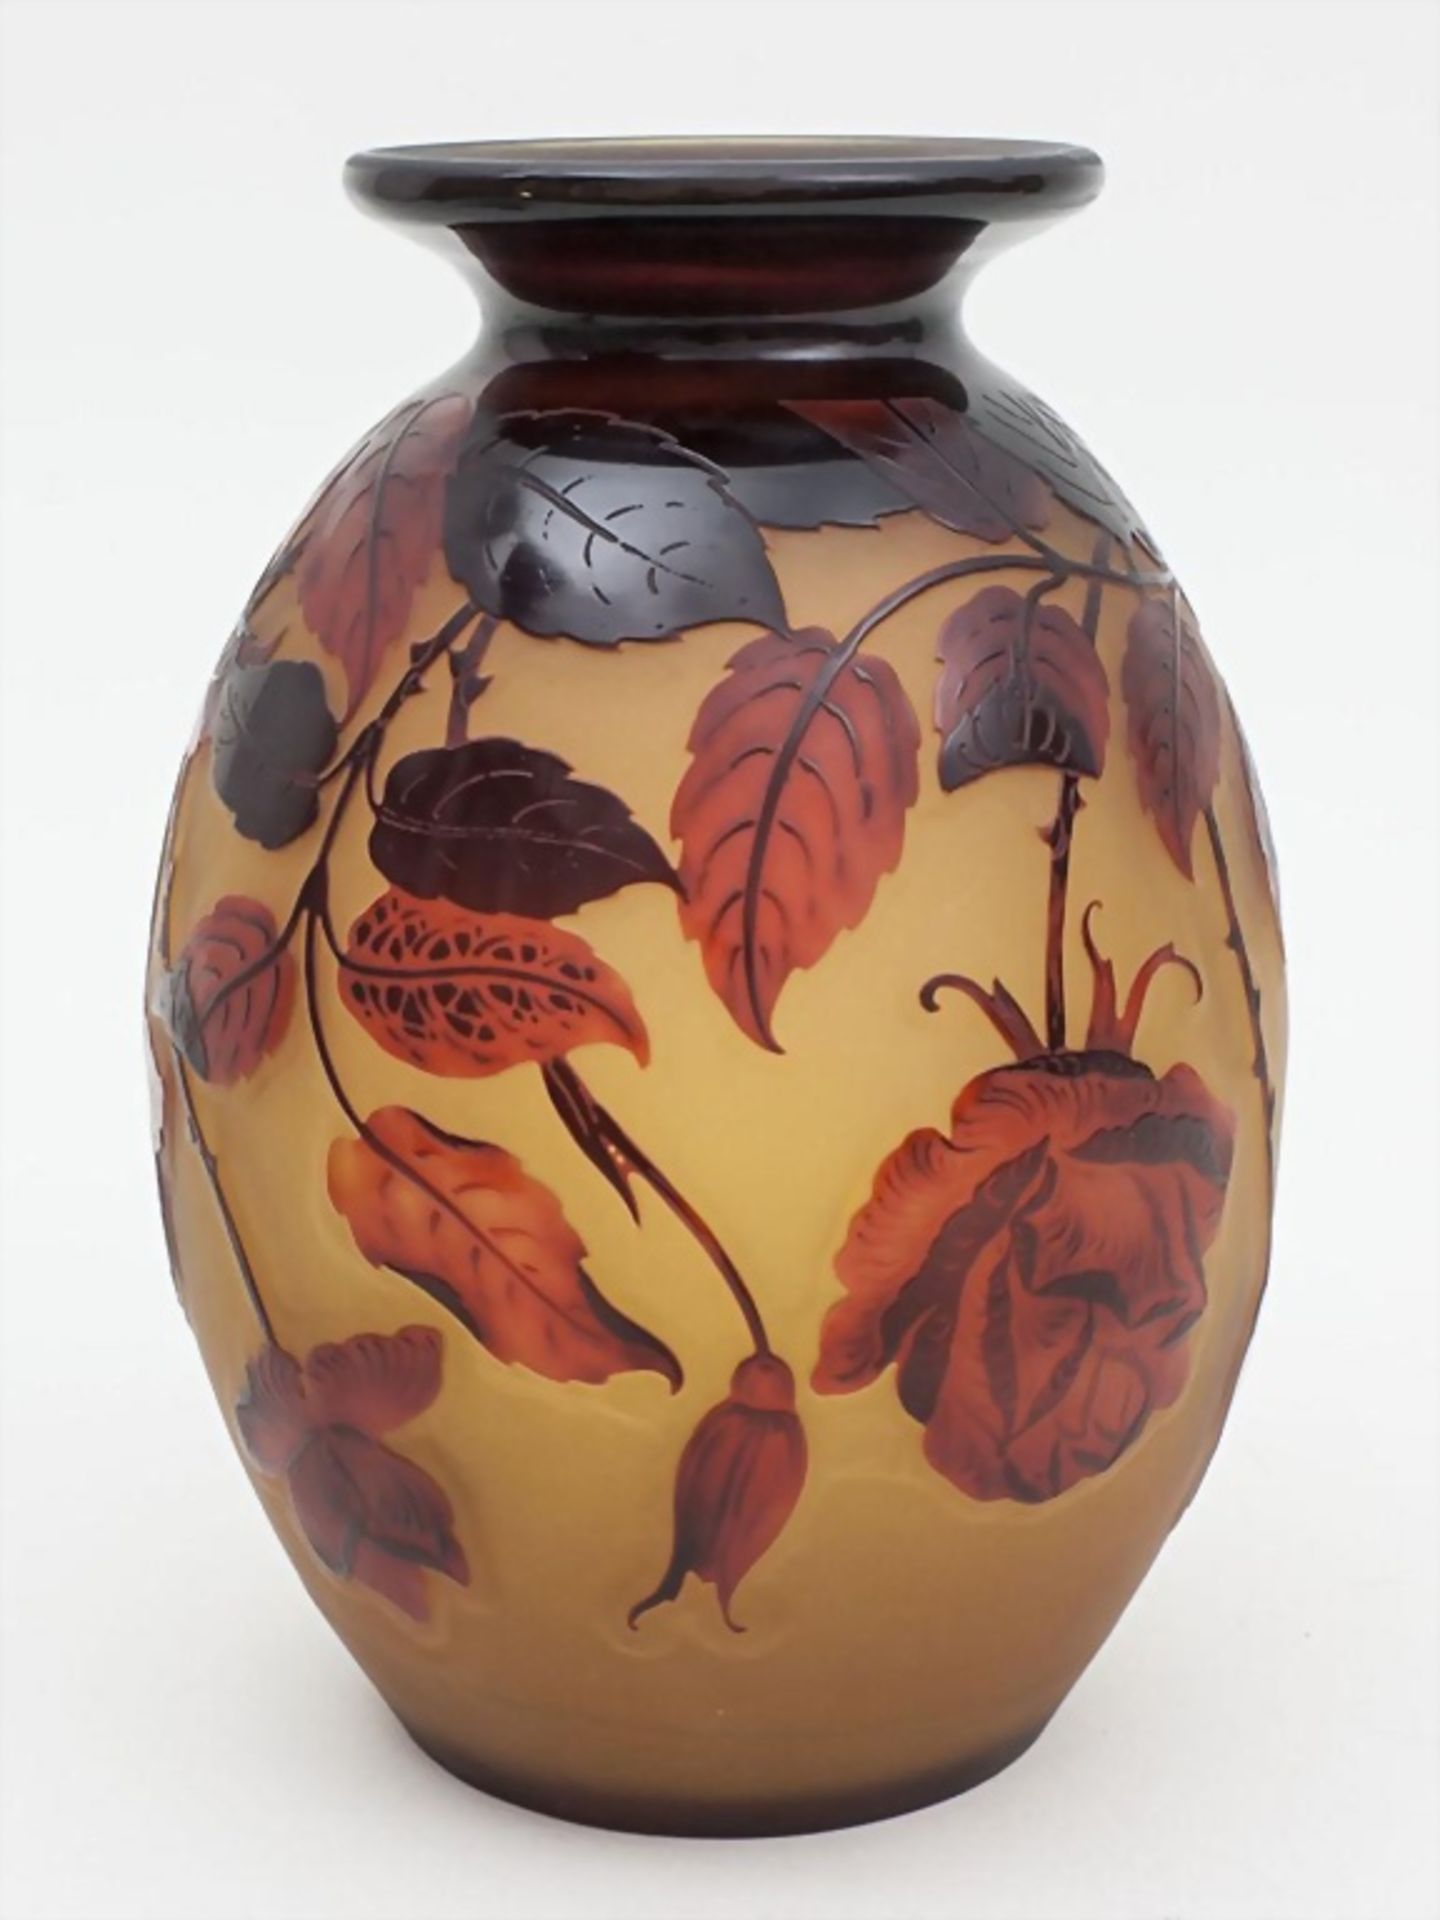 Jugendstil-Vase/Art Nouveau Vase, wohl D'Argental, Ecole de Nancy, um 1920 - Image 2 of 3